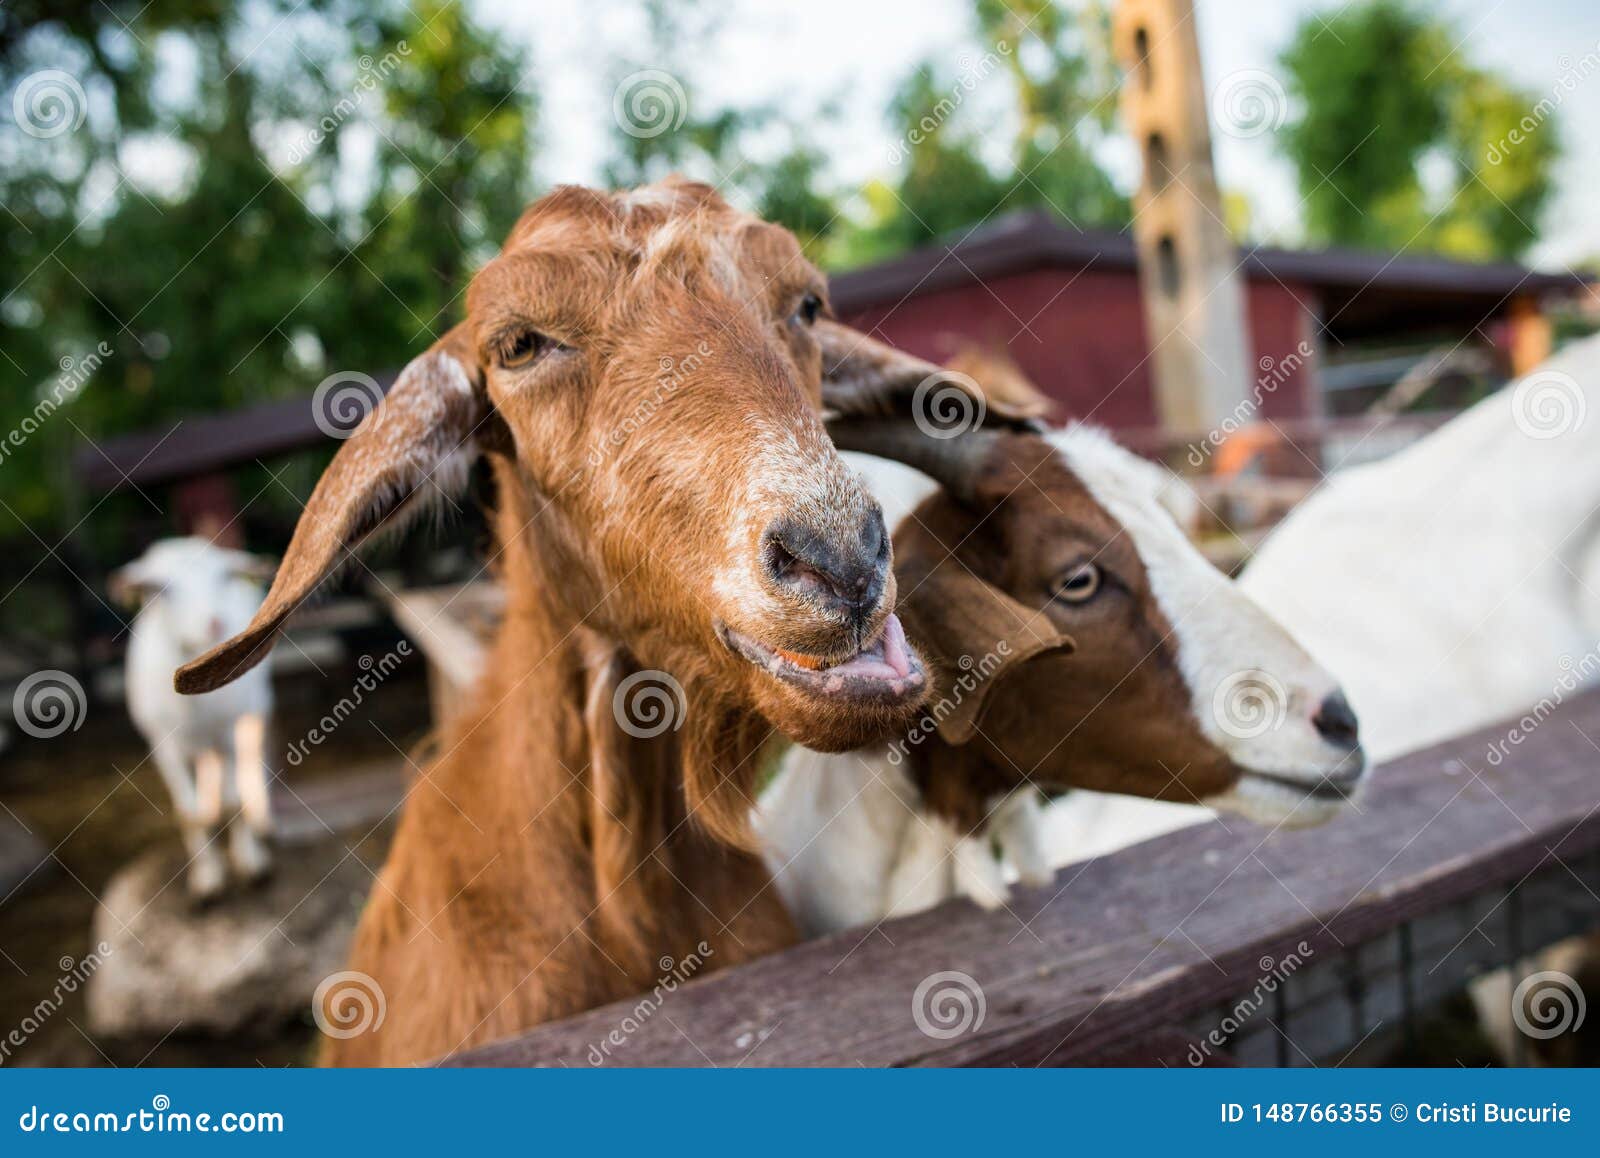 funny goats closeup portrait